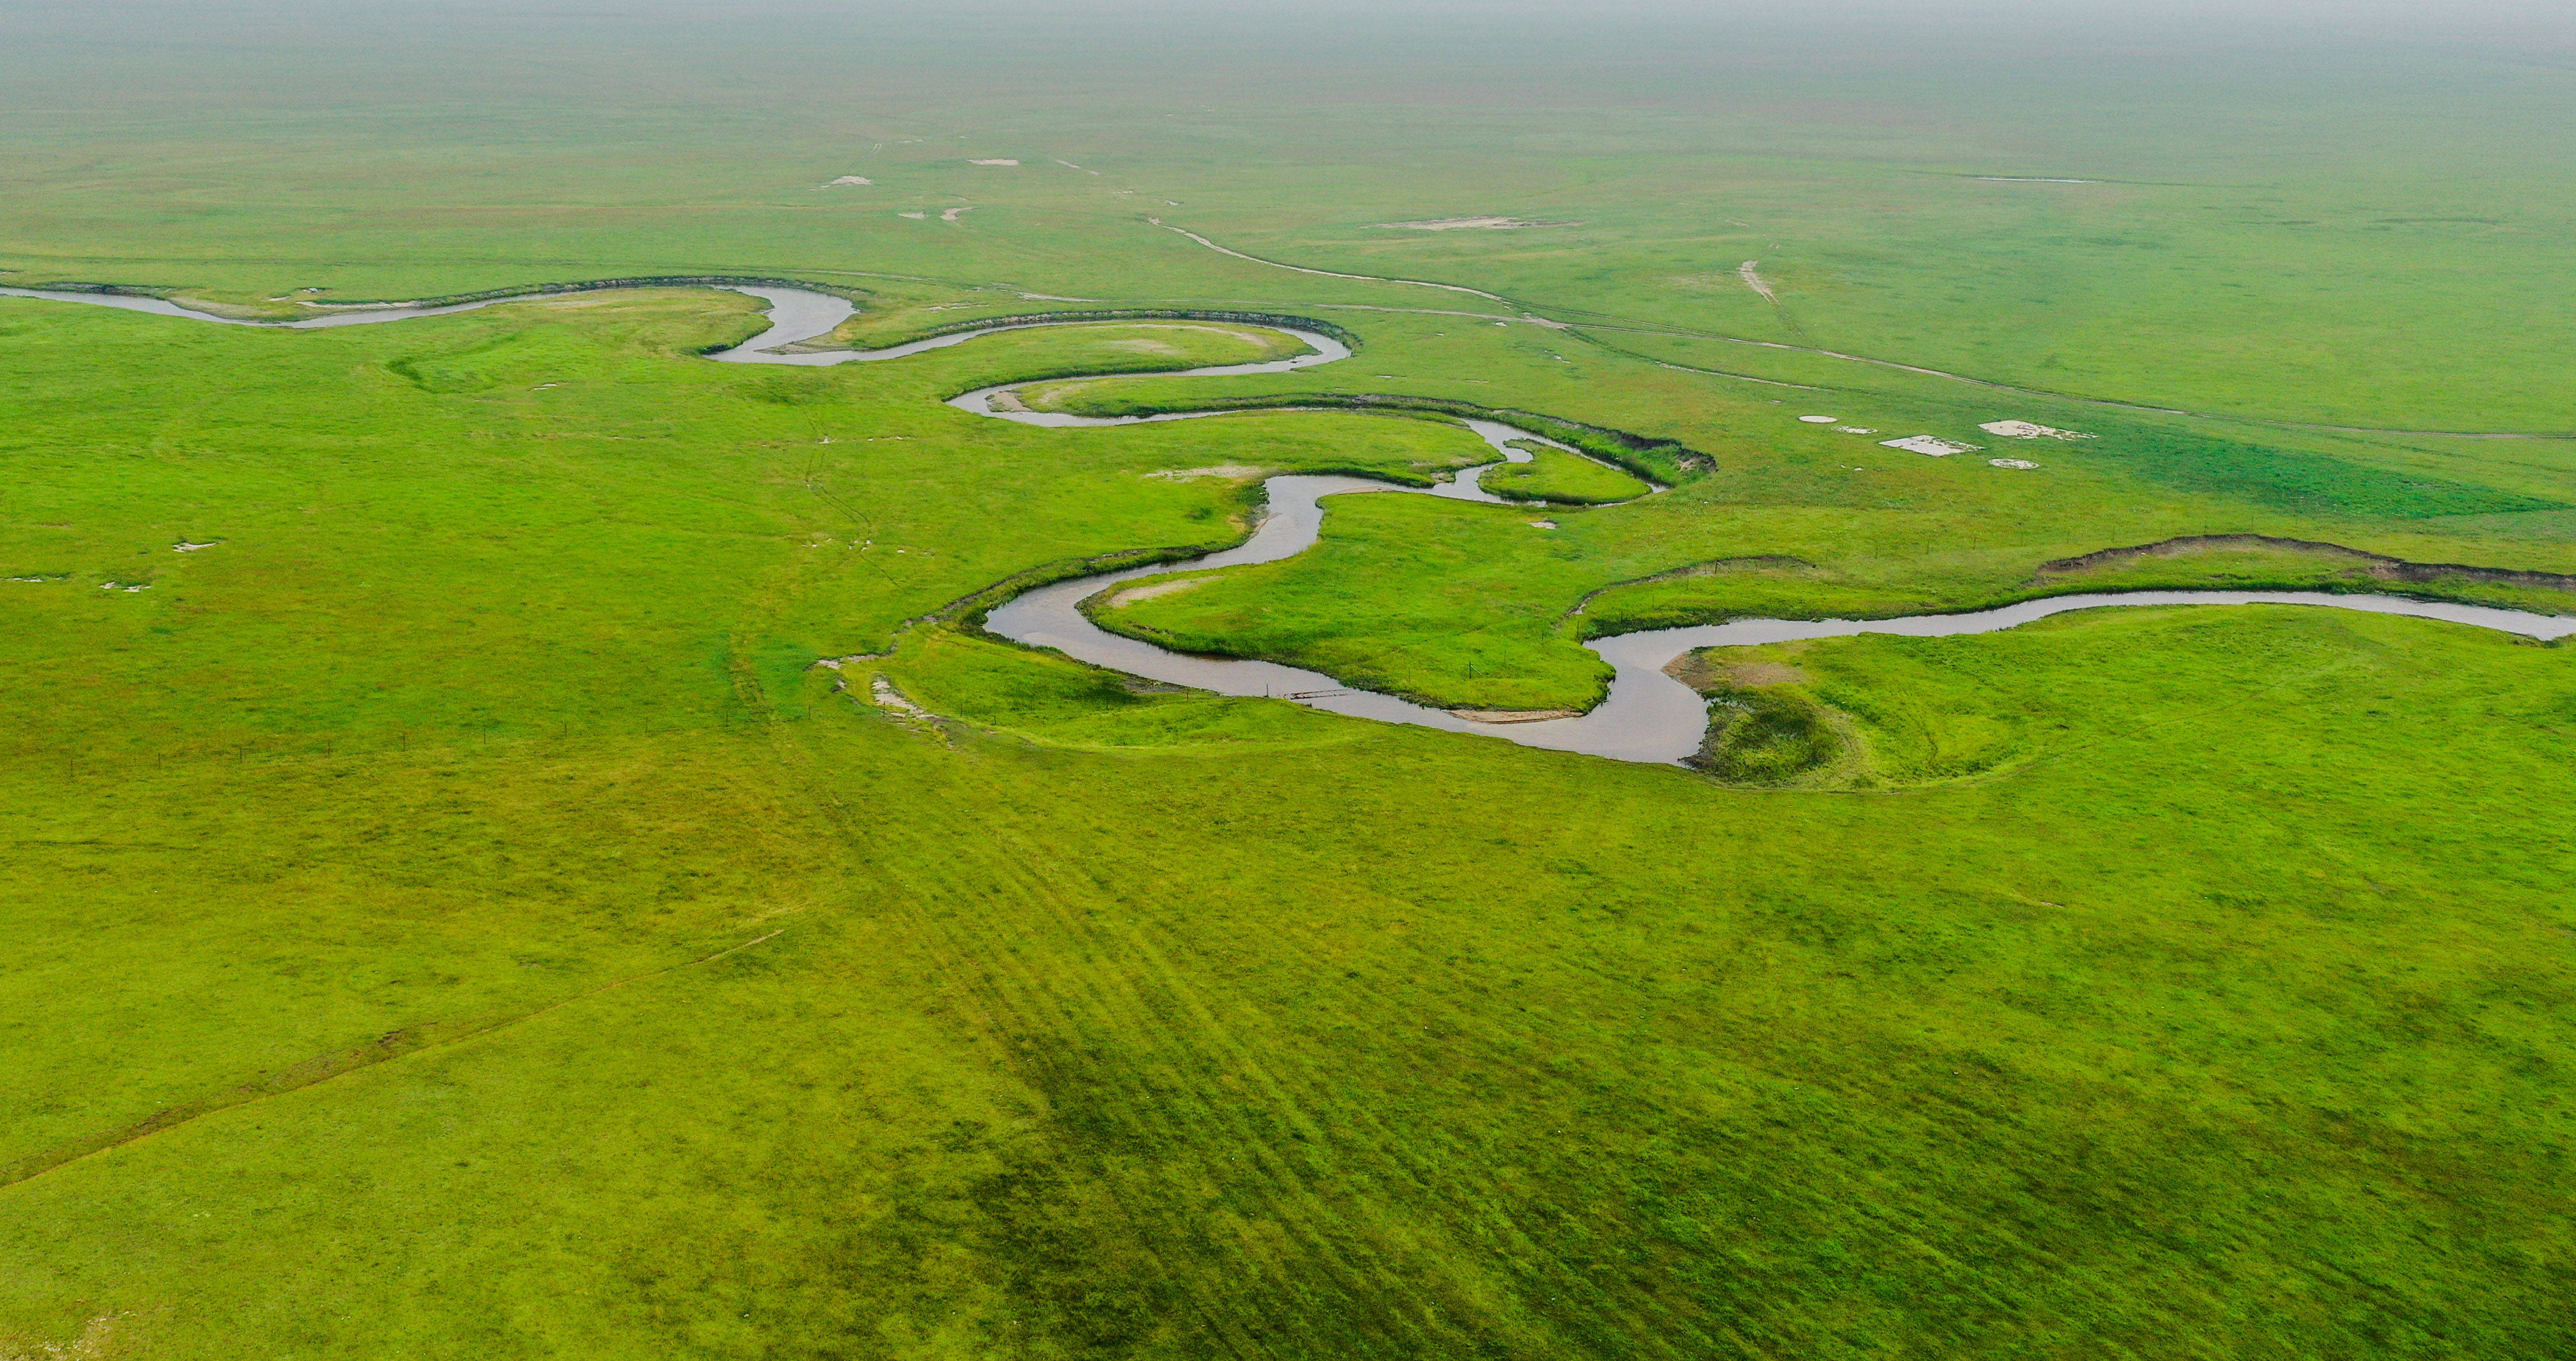 盛夏时节,内蒙古锡林郭勒盟东乌珠穆沁旗草原水草丰美,乃林河流淌其间